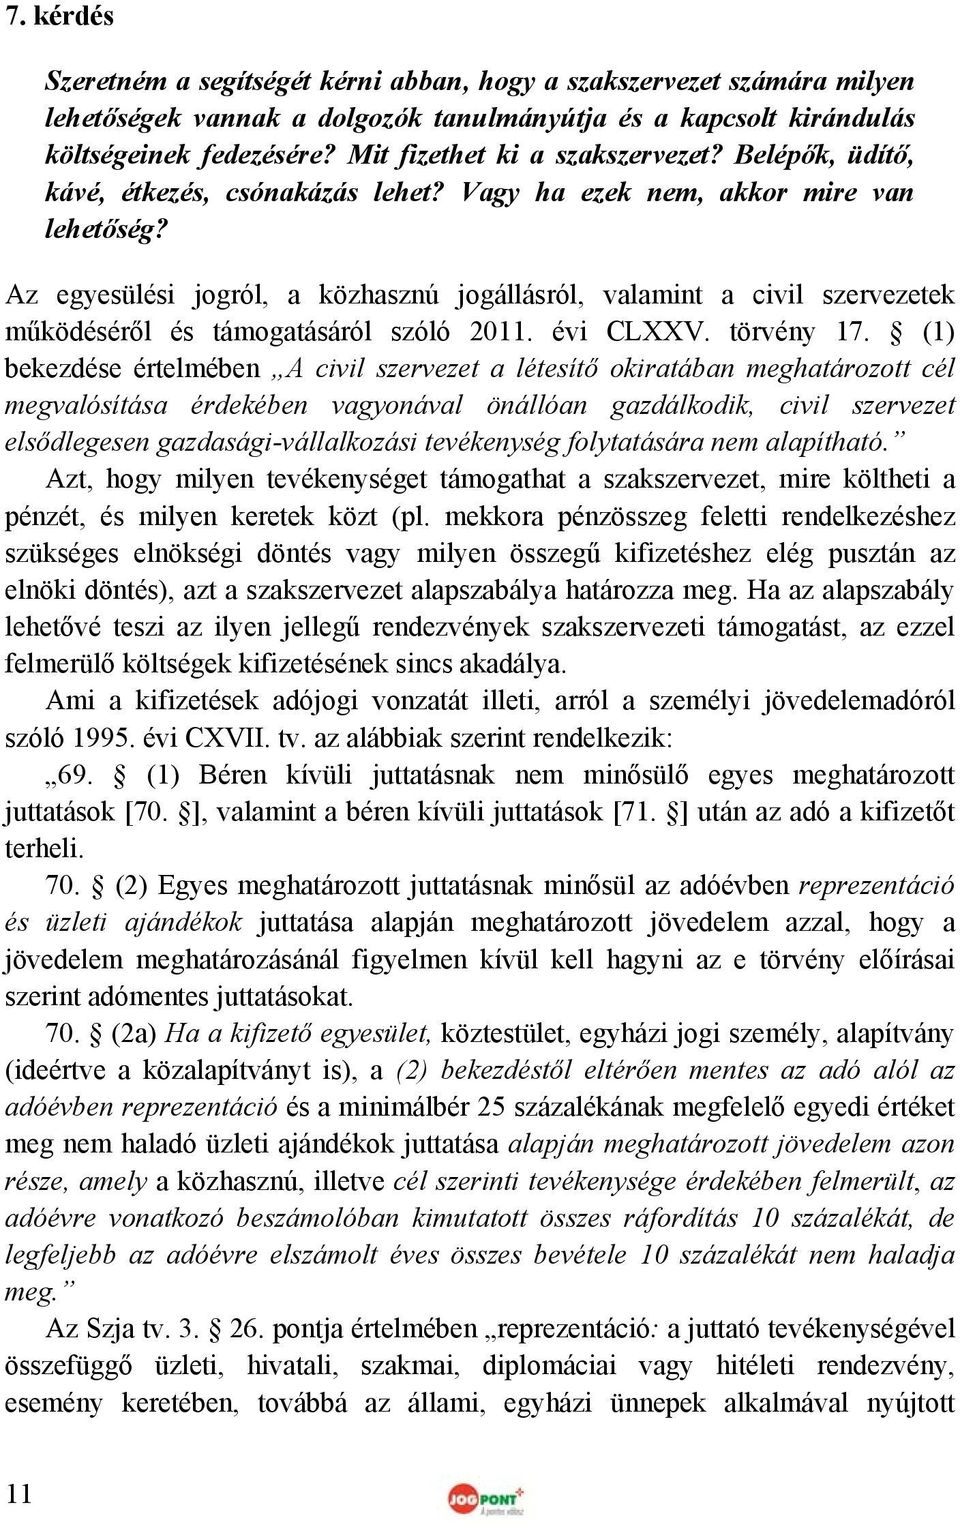 Az egyesülési jogról, a közhasznú jogállásról, valamint a civil szervezetek működéséről és támogatásáról szóló 2011. évi CLXXV. törvény 17.